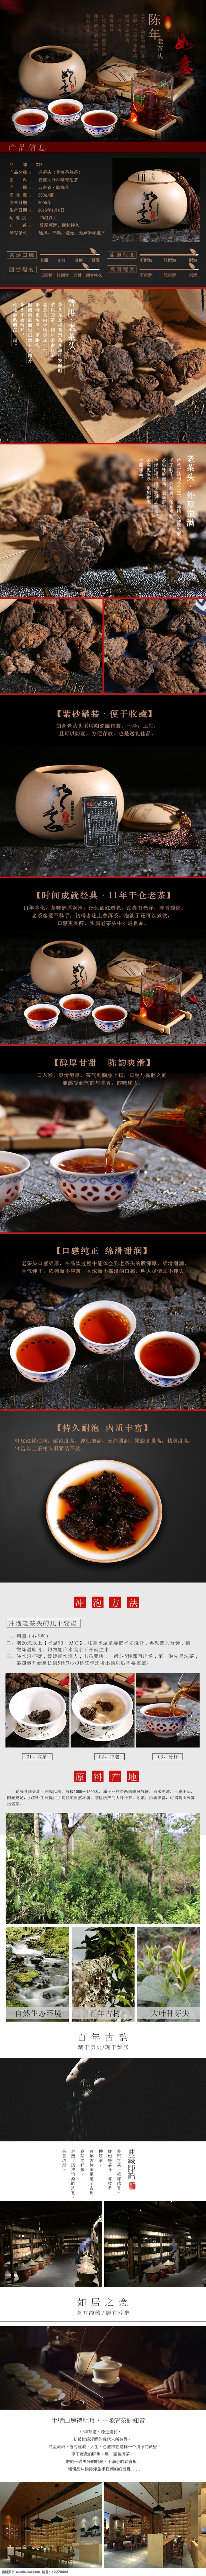 红茶 茶叶 详情 页 茶 宝贝 描述 模板 绿茶 绿色 淘宝茶叶 中国 风 淘宝